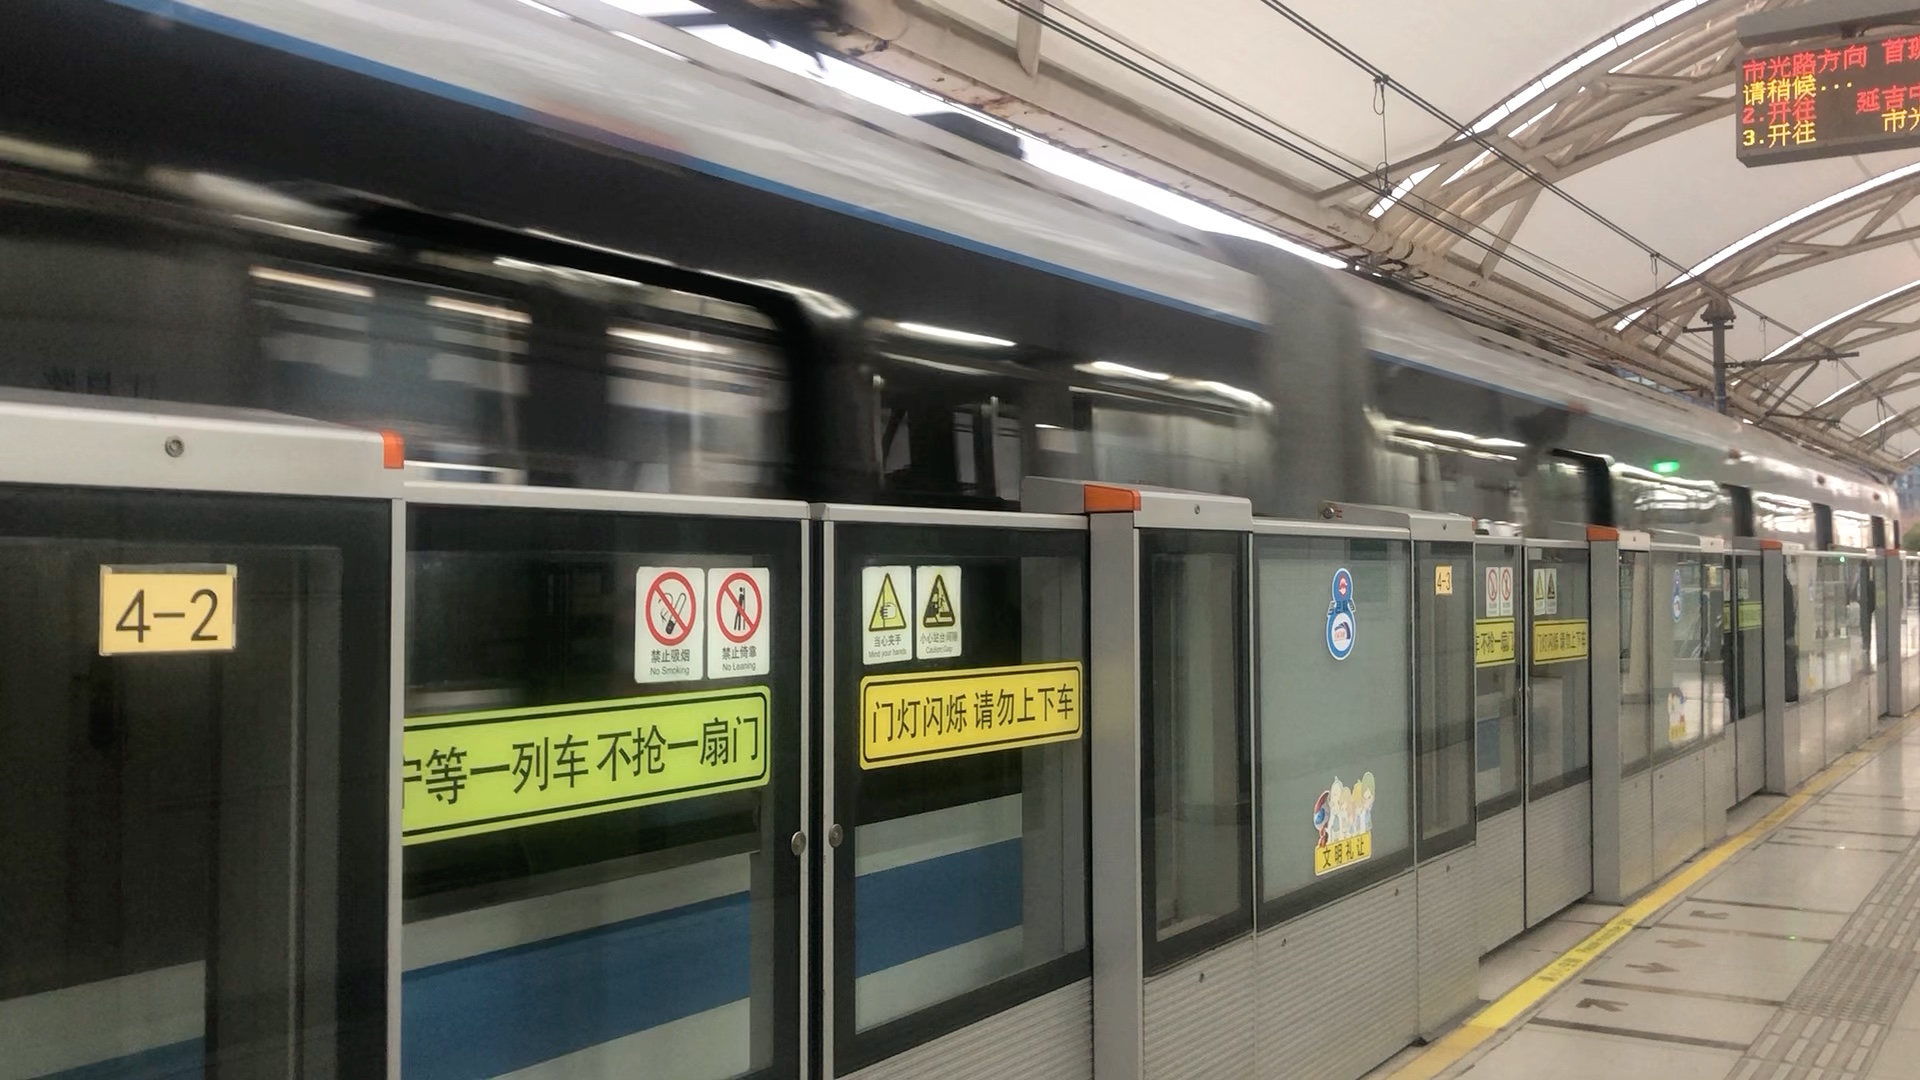 【疫情下的上海】上海地铁8号线862号车离开江月路站,市光路方向